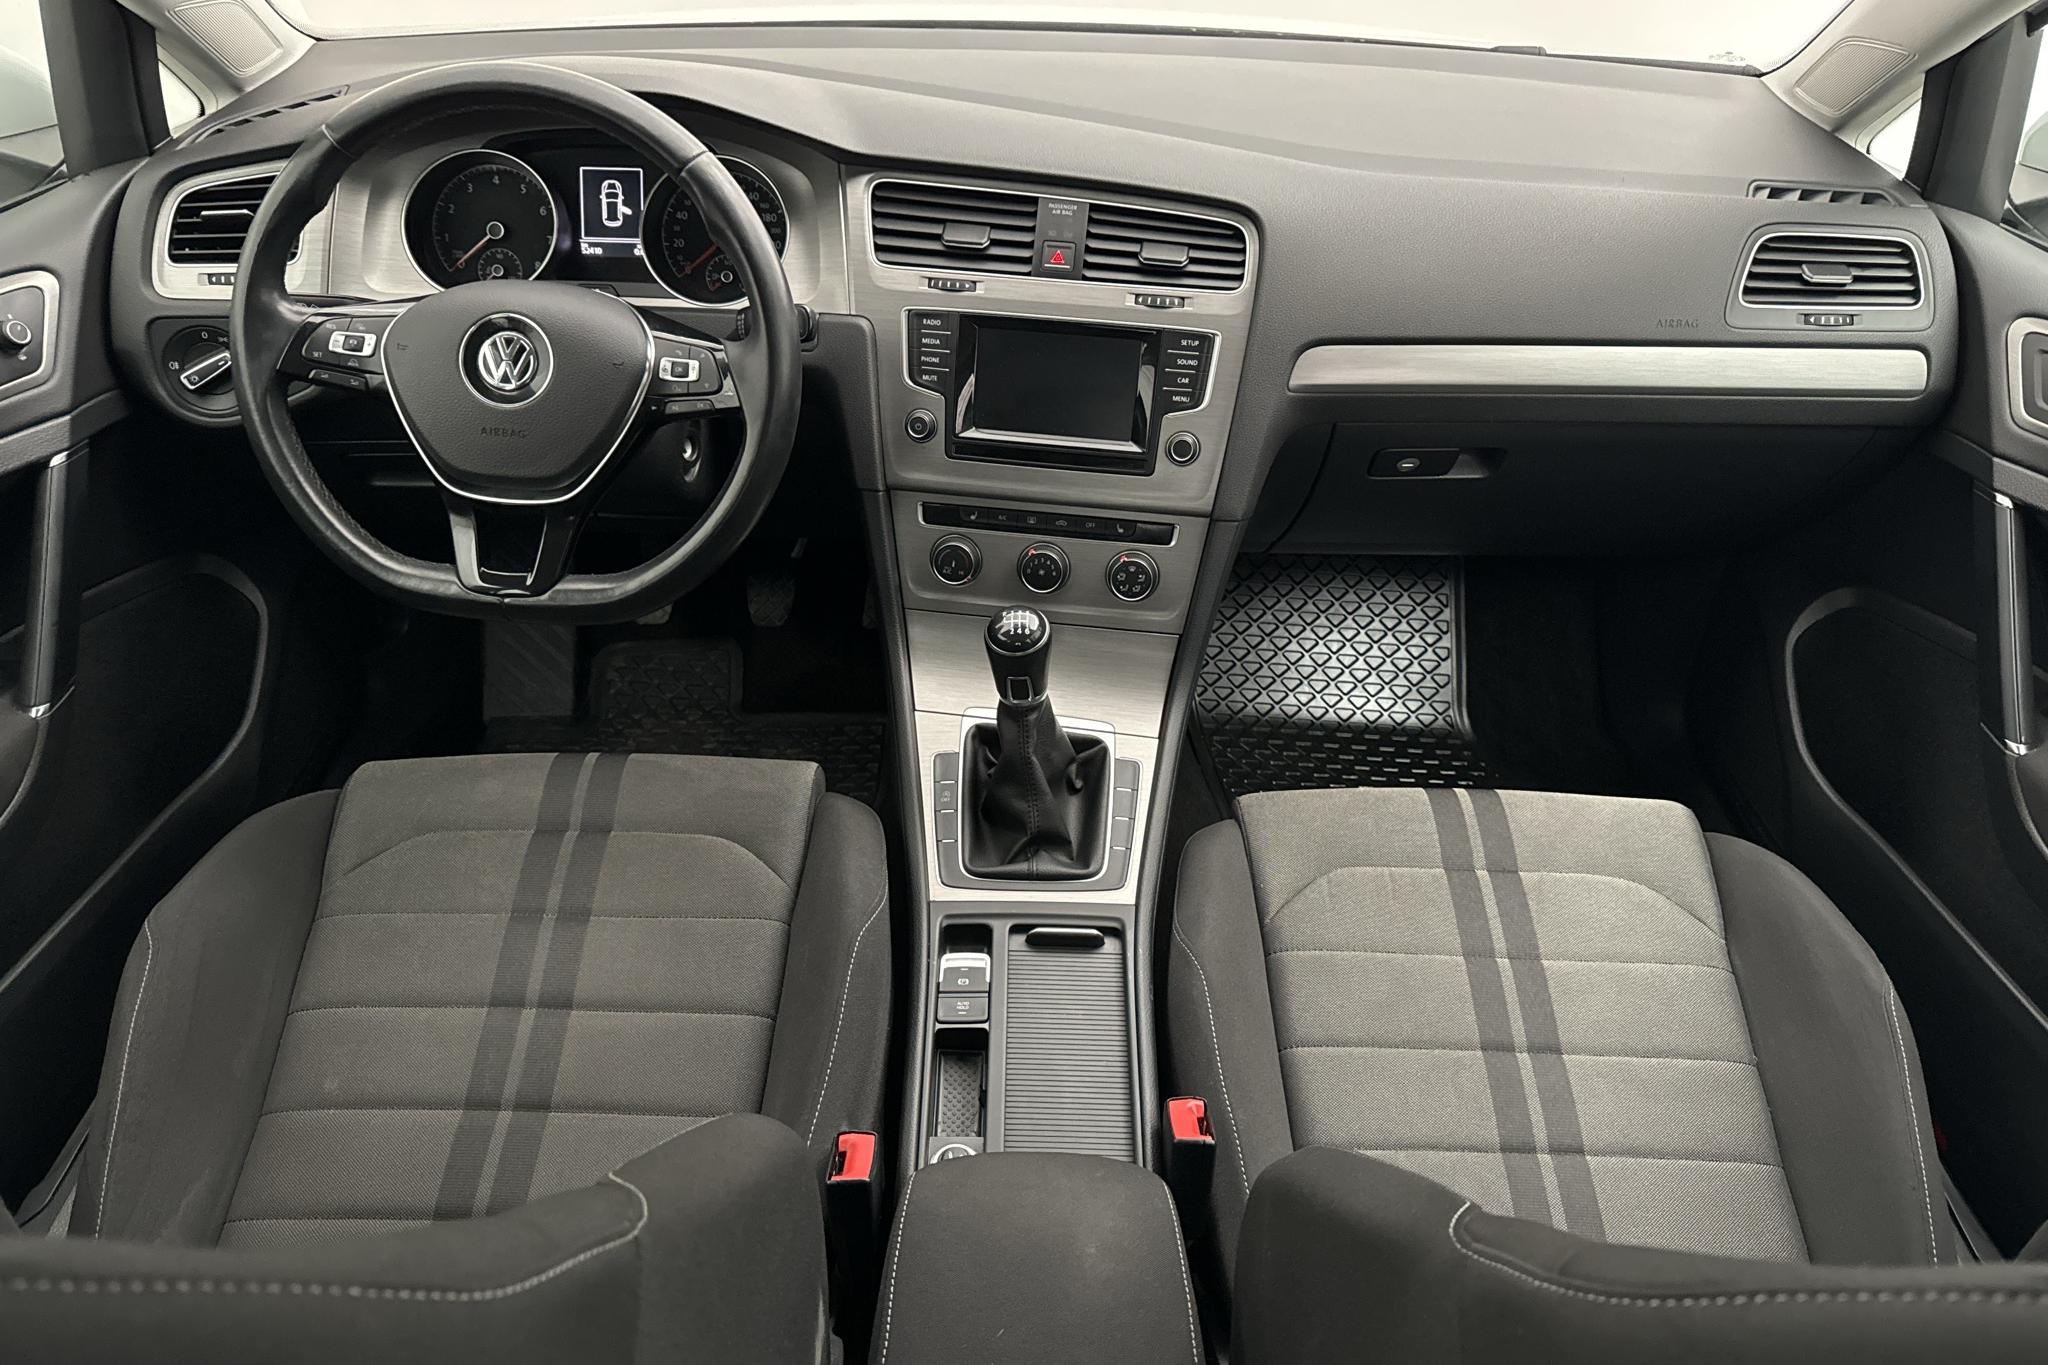 VW Golf VII 1.2 TSI 5dr (105hk) - 52 410 km - Käsitsi - valge - 2015